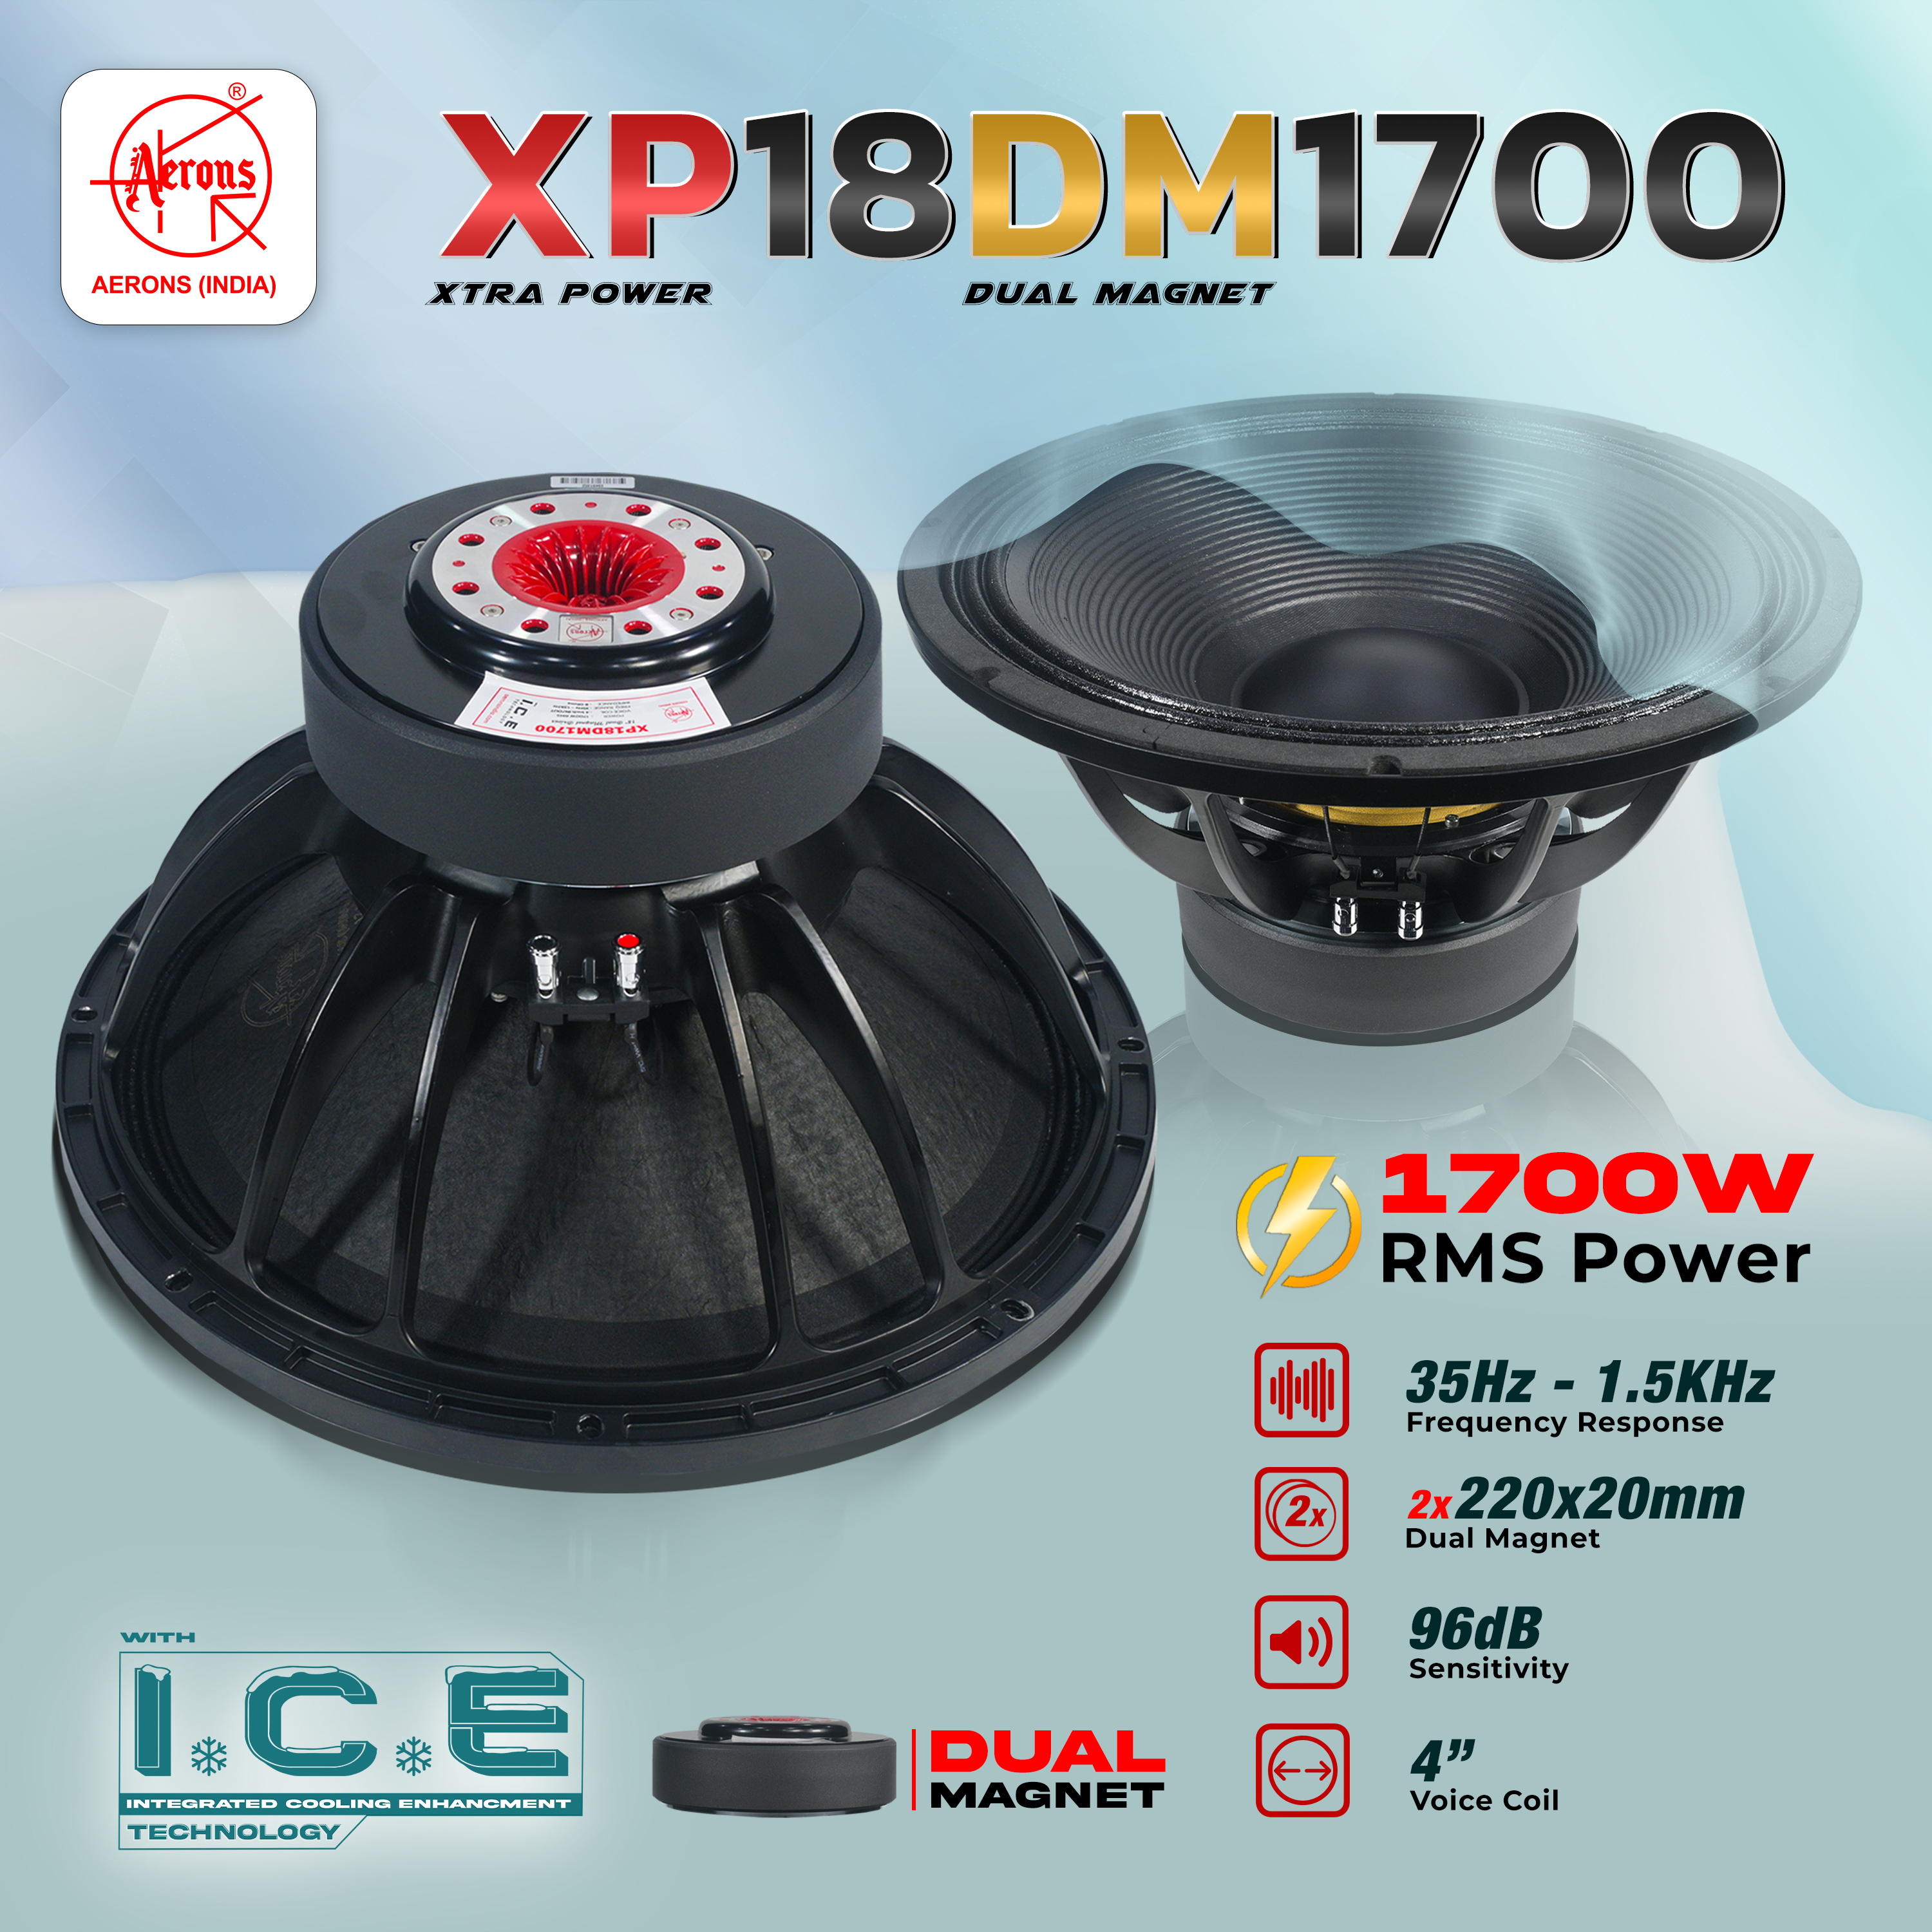 XP18DM1700